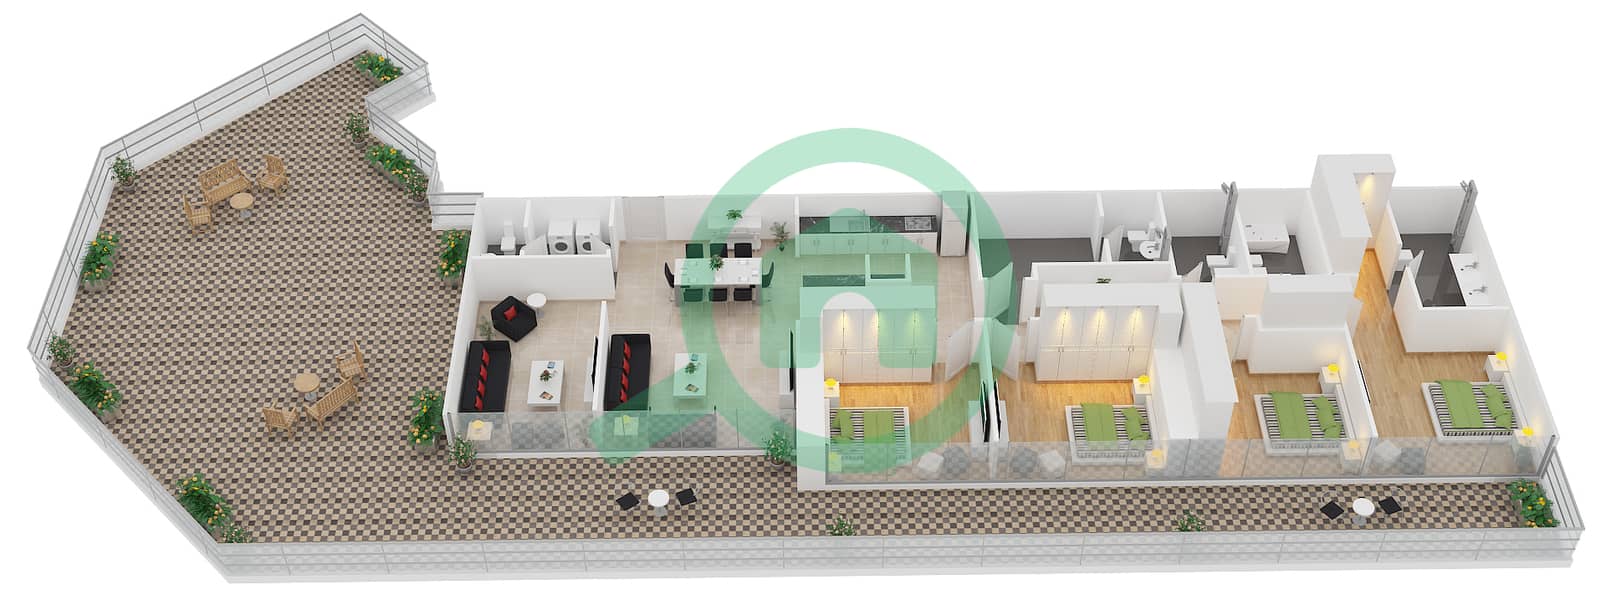 المخططات الطابقية لتصميم النموذج E1 شقة 4 غرف نوم - زايا هاميني interactive3D